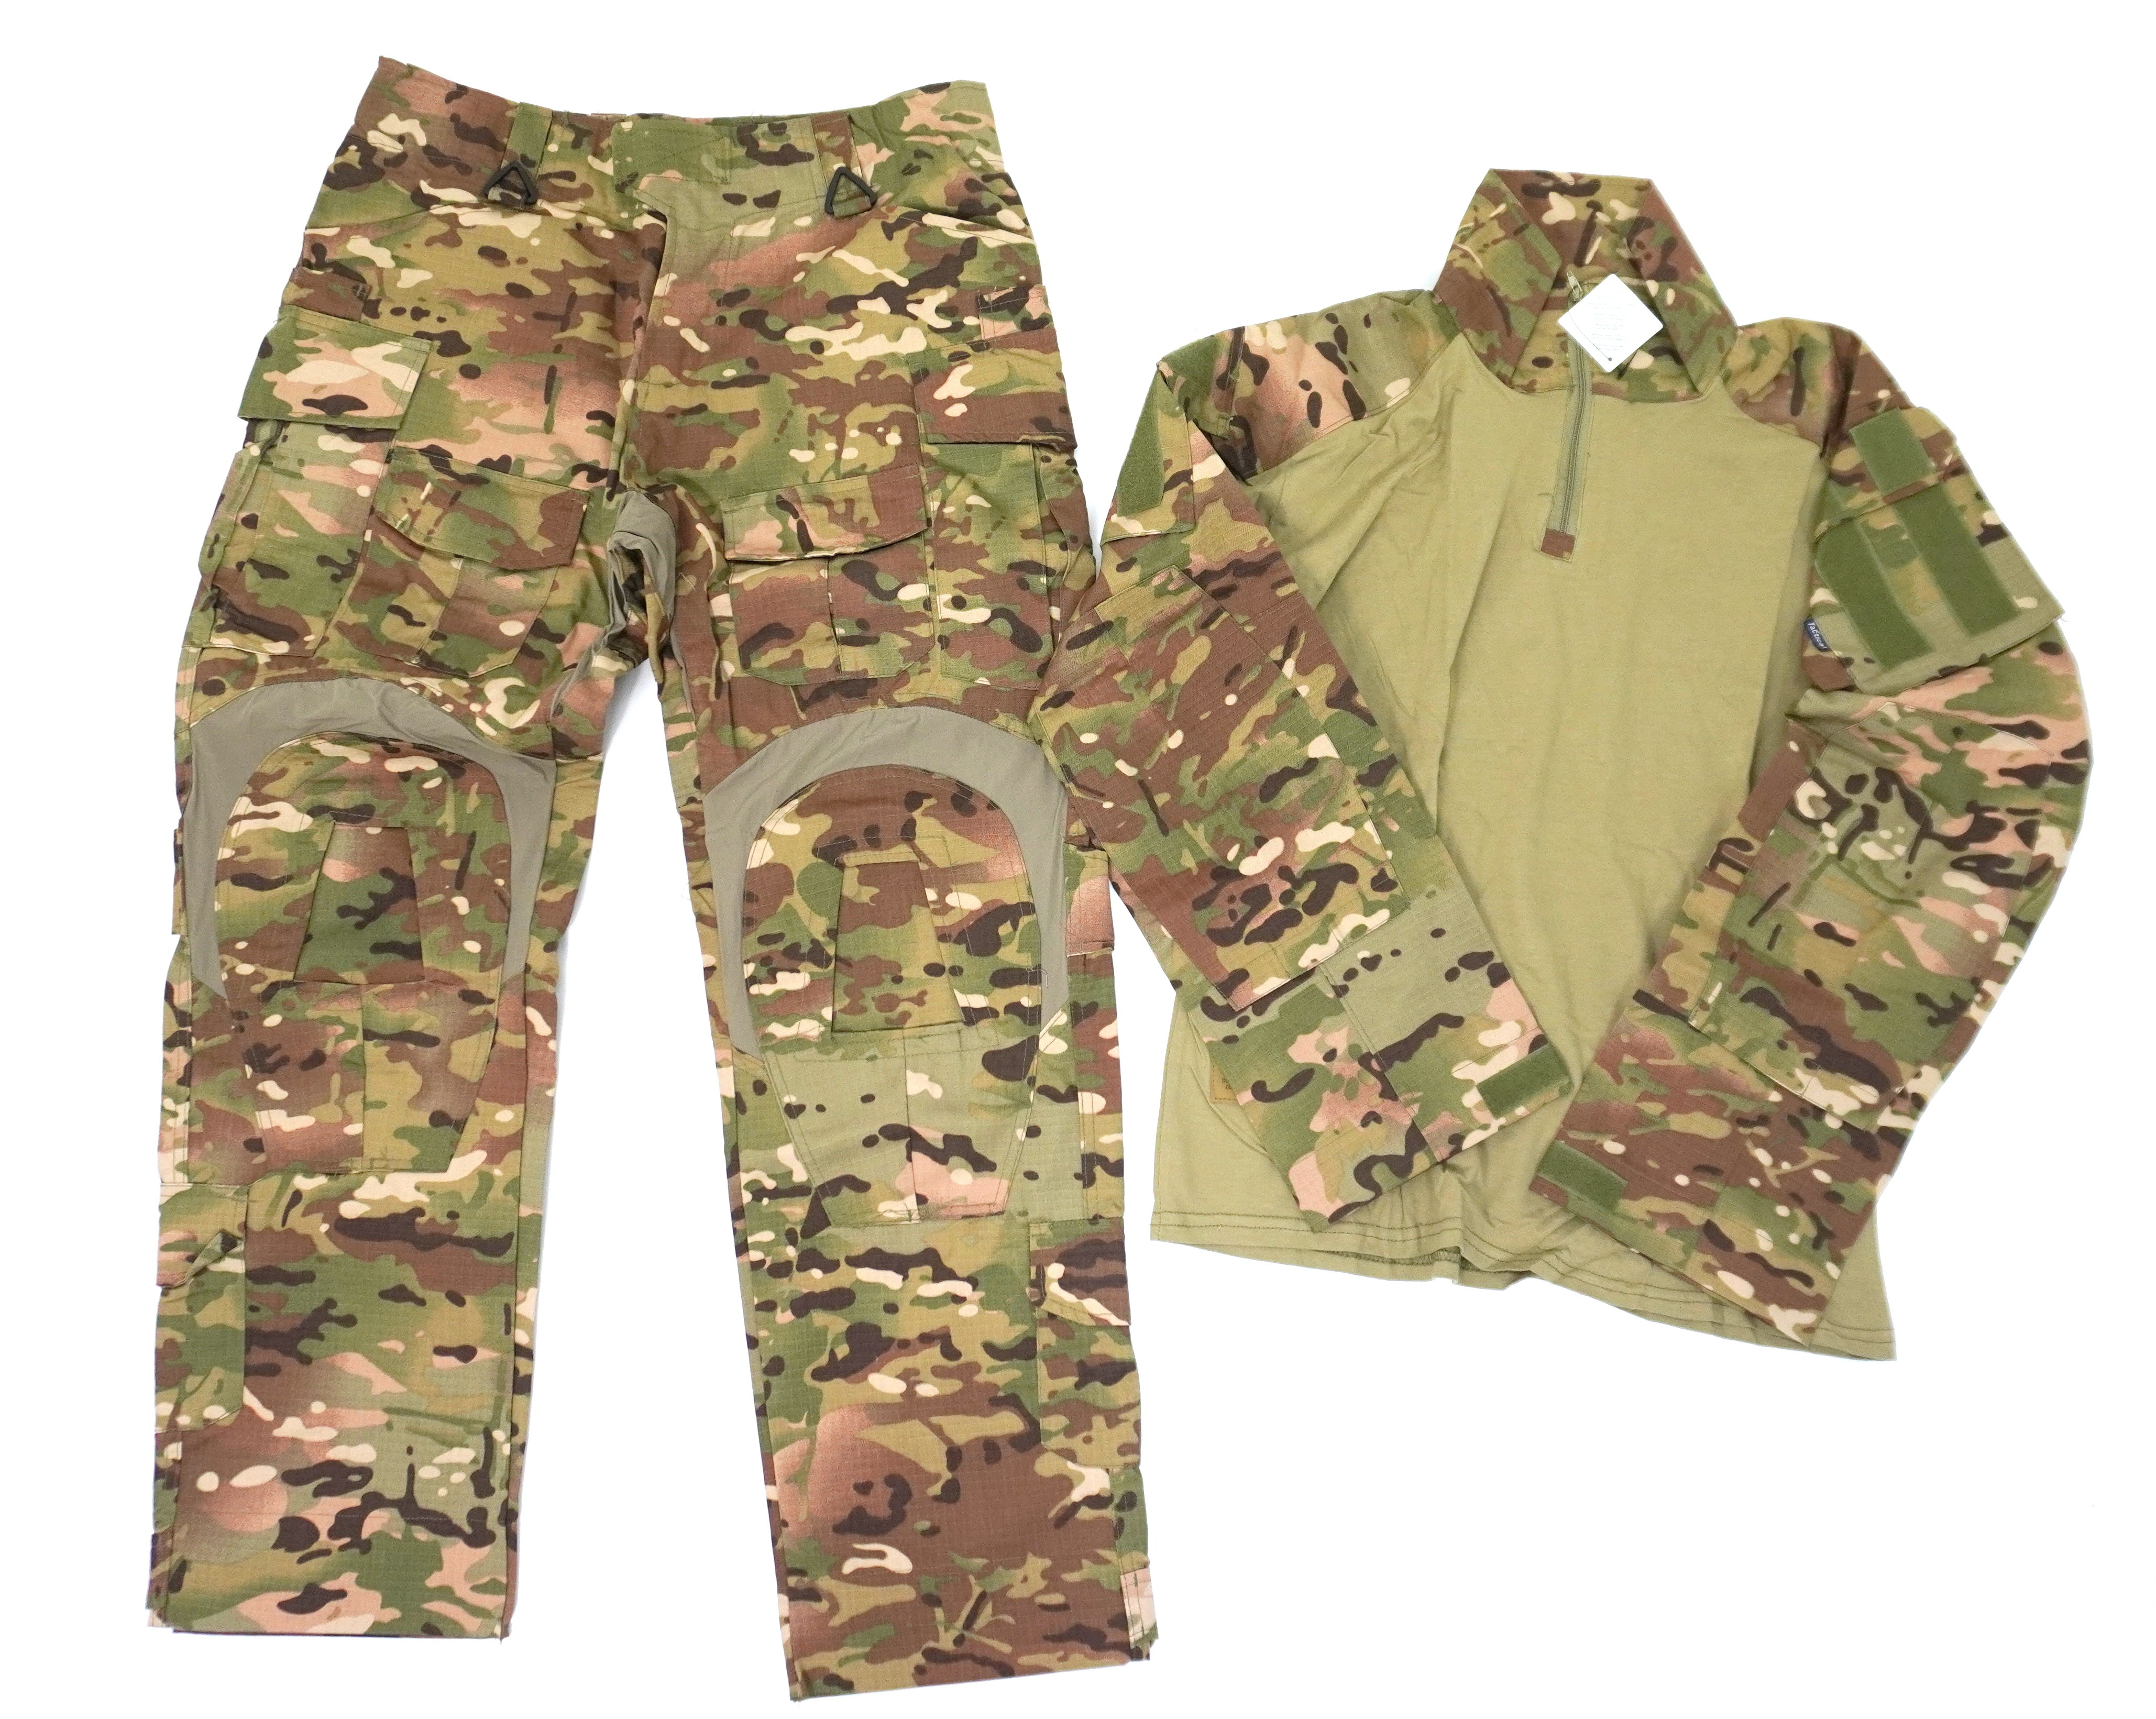 Tactical G3 MULTICAM Trouser & UBAC Uniform Set